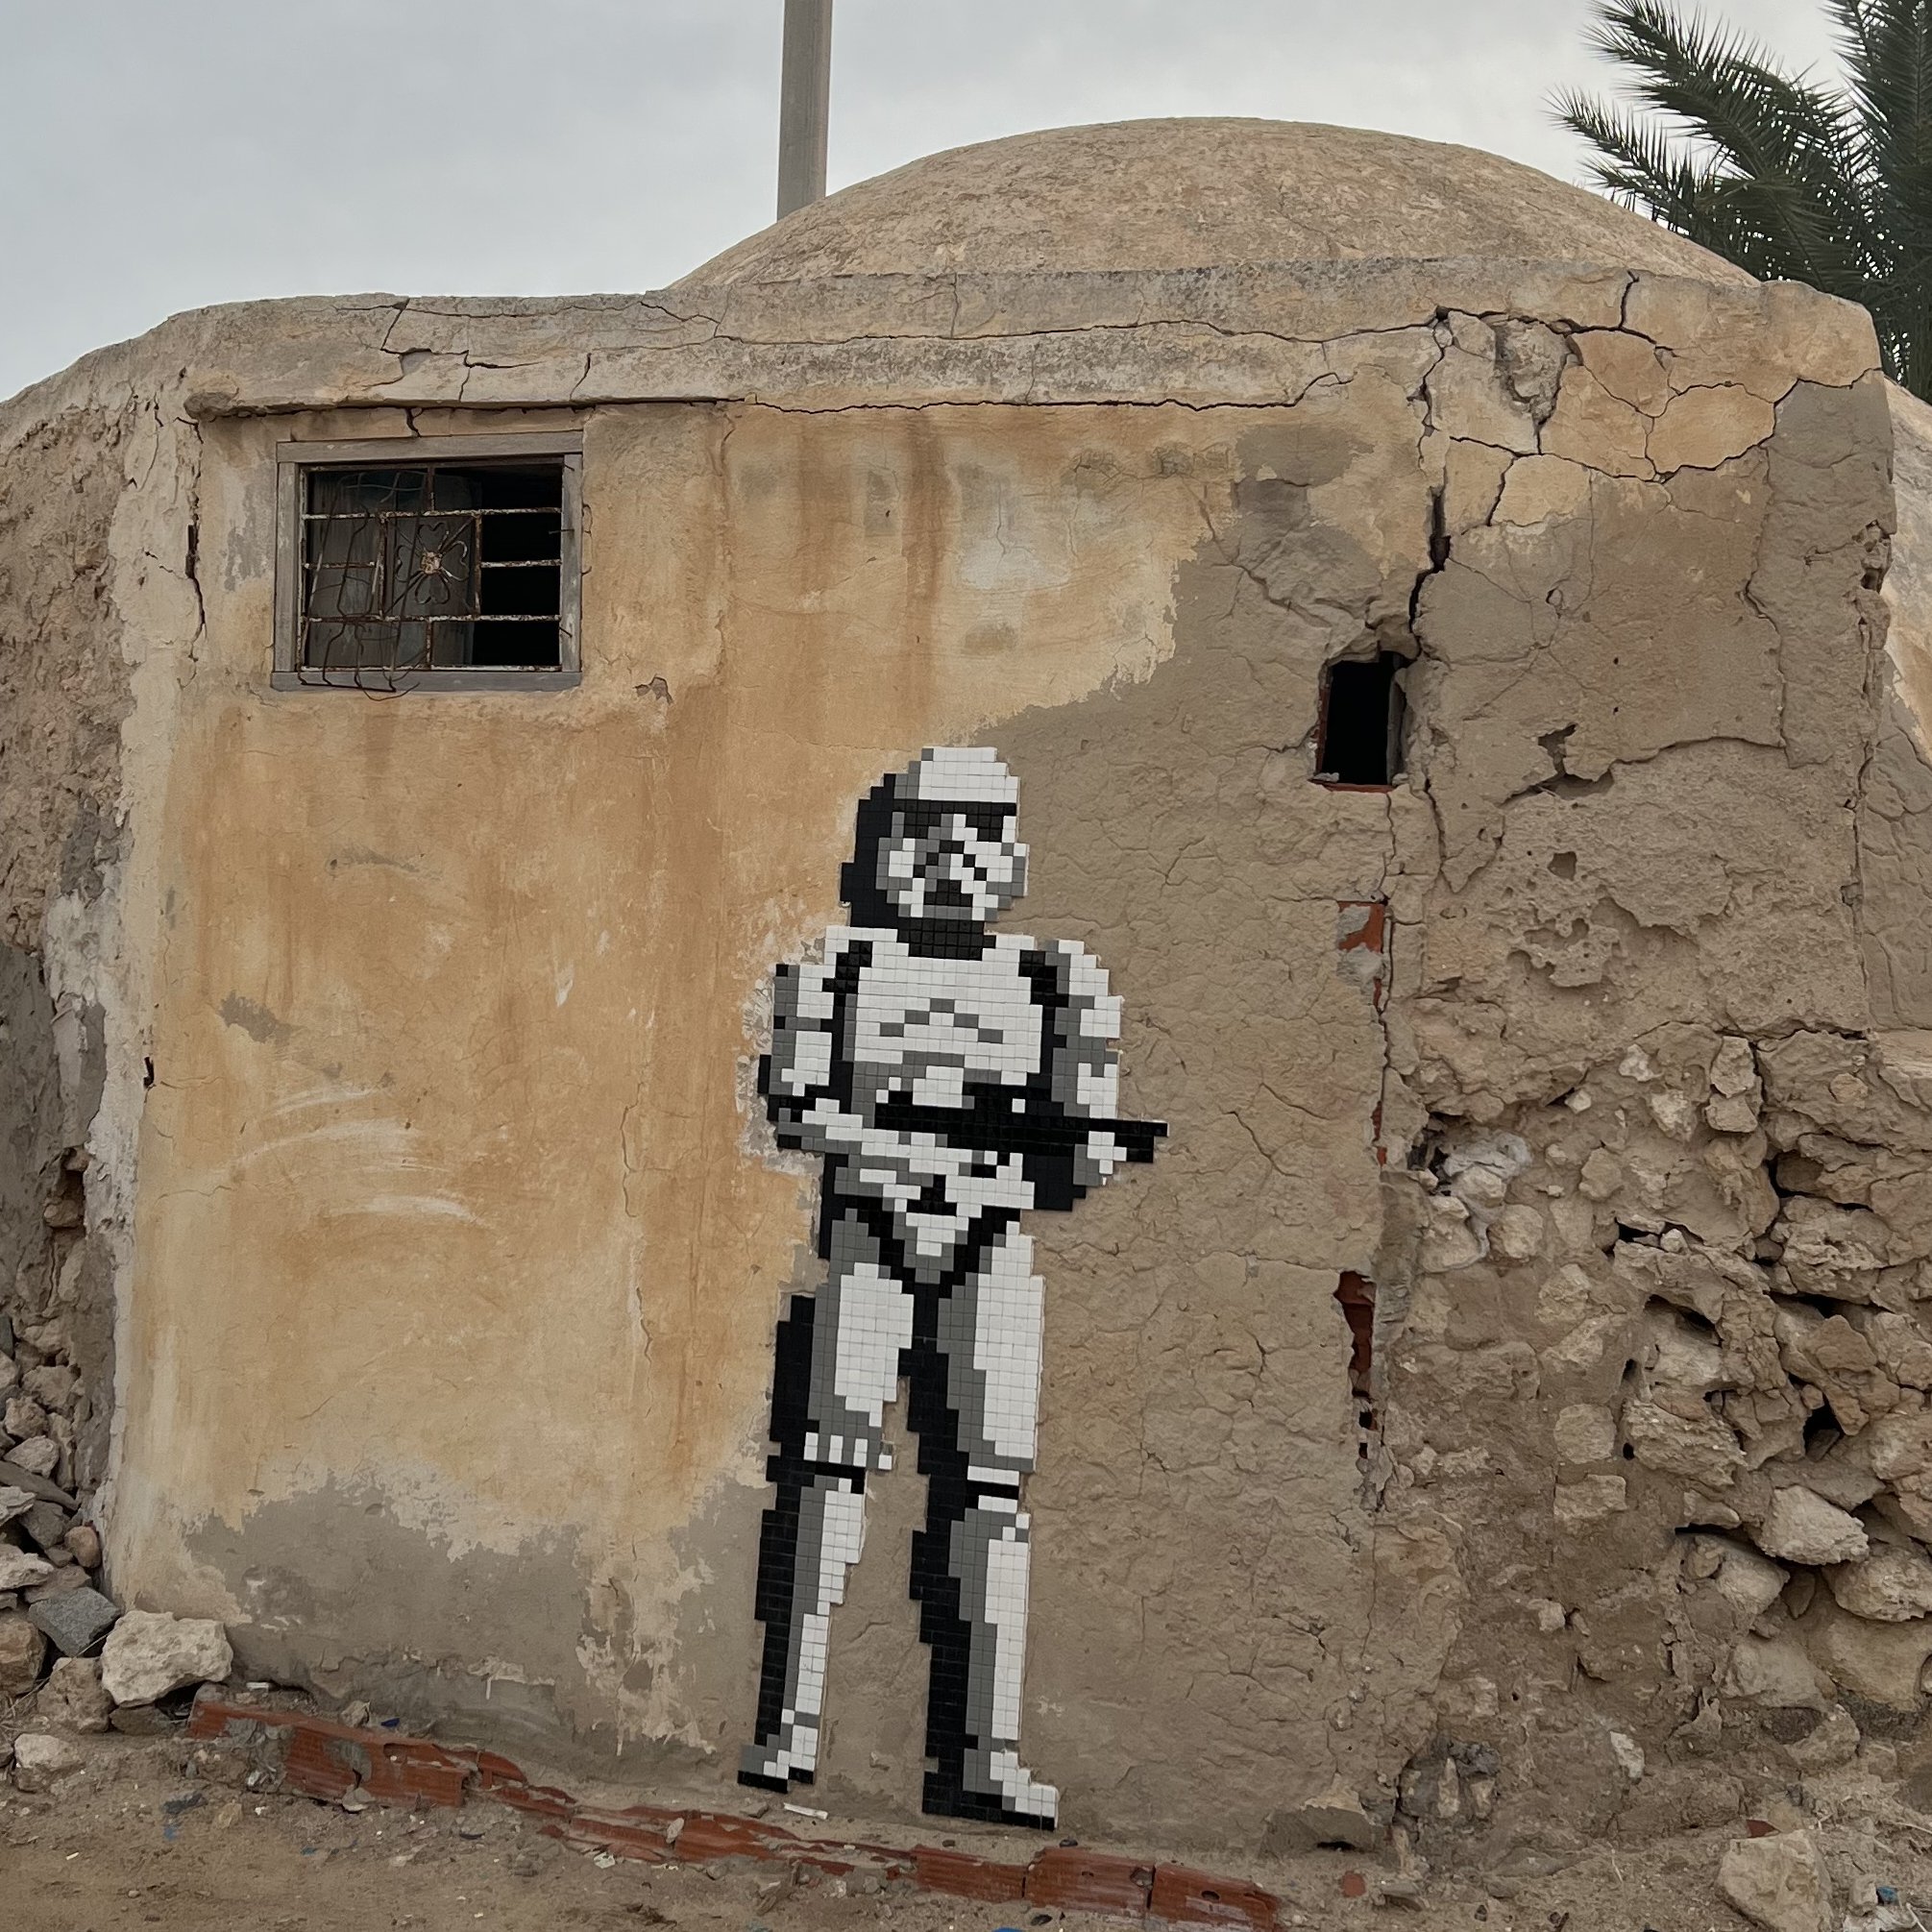 Tunesien for family - Tunesien mit Kindern - Star Wars Architektur